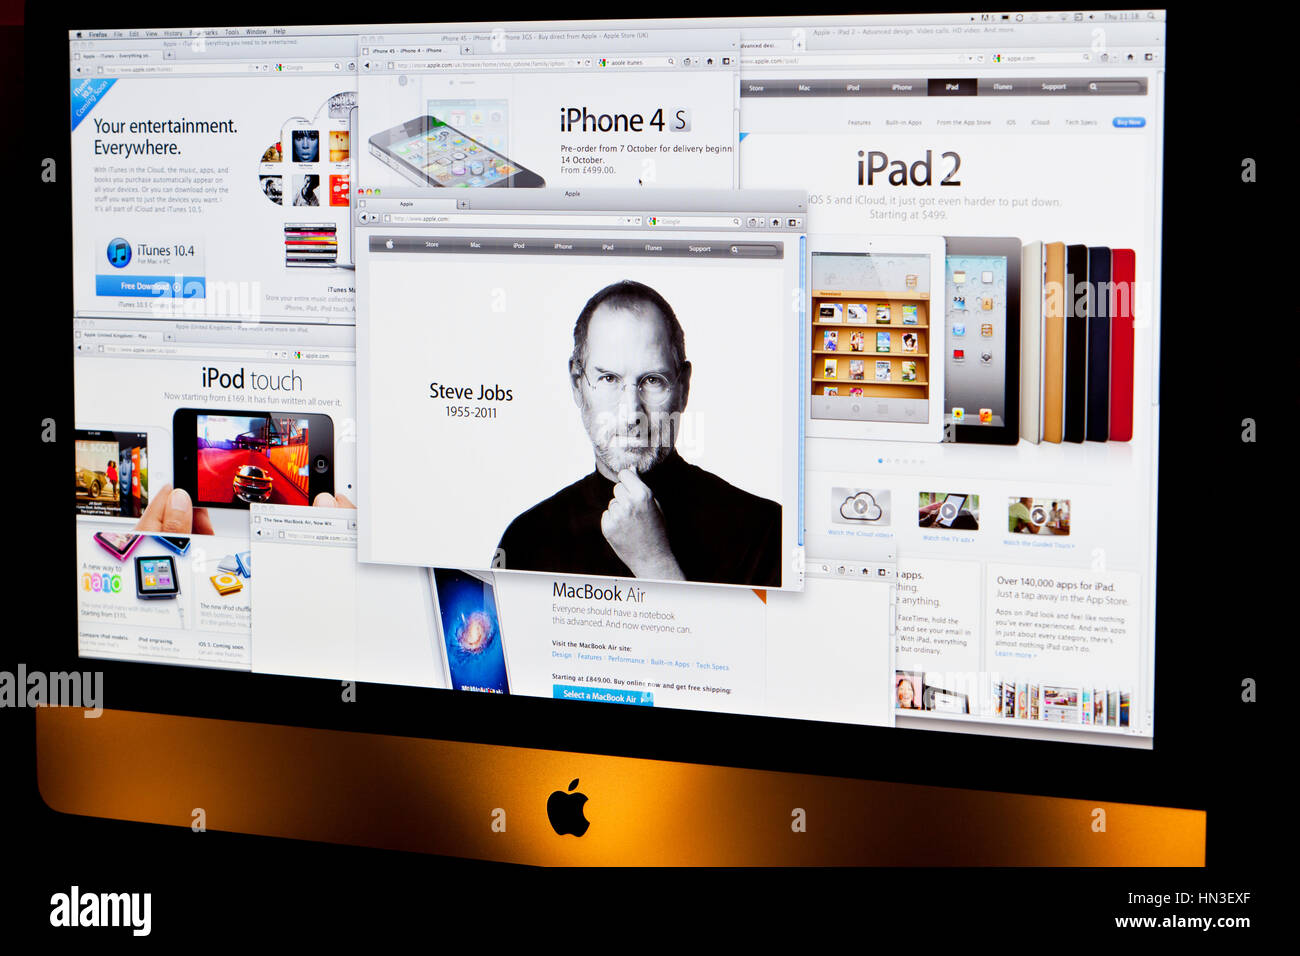 BATH, Royaume-Uni - Octobre 6, 2011 : Un ordinateur Apple iMac afficher plusieurs fenêtres du navigateur relatives aux produits Apple et de la page d'hommage à l'ancien Banque D'Images